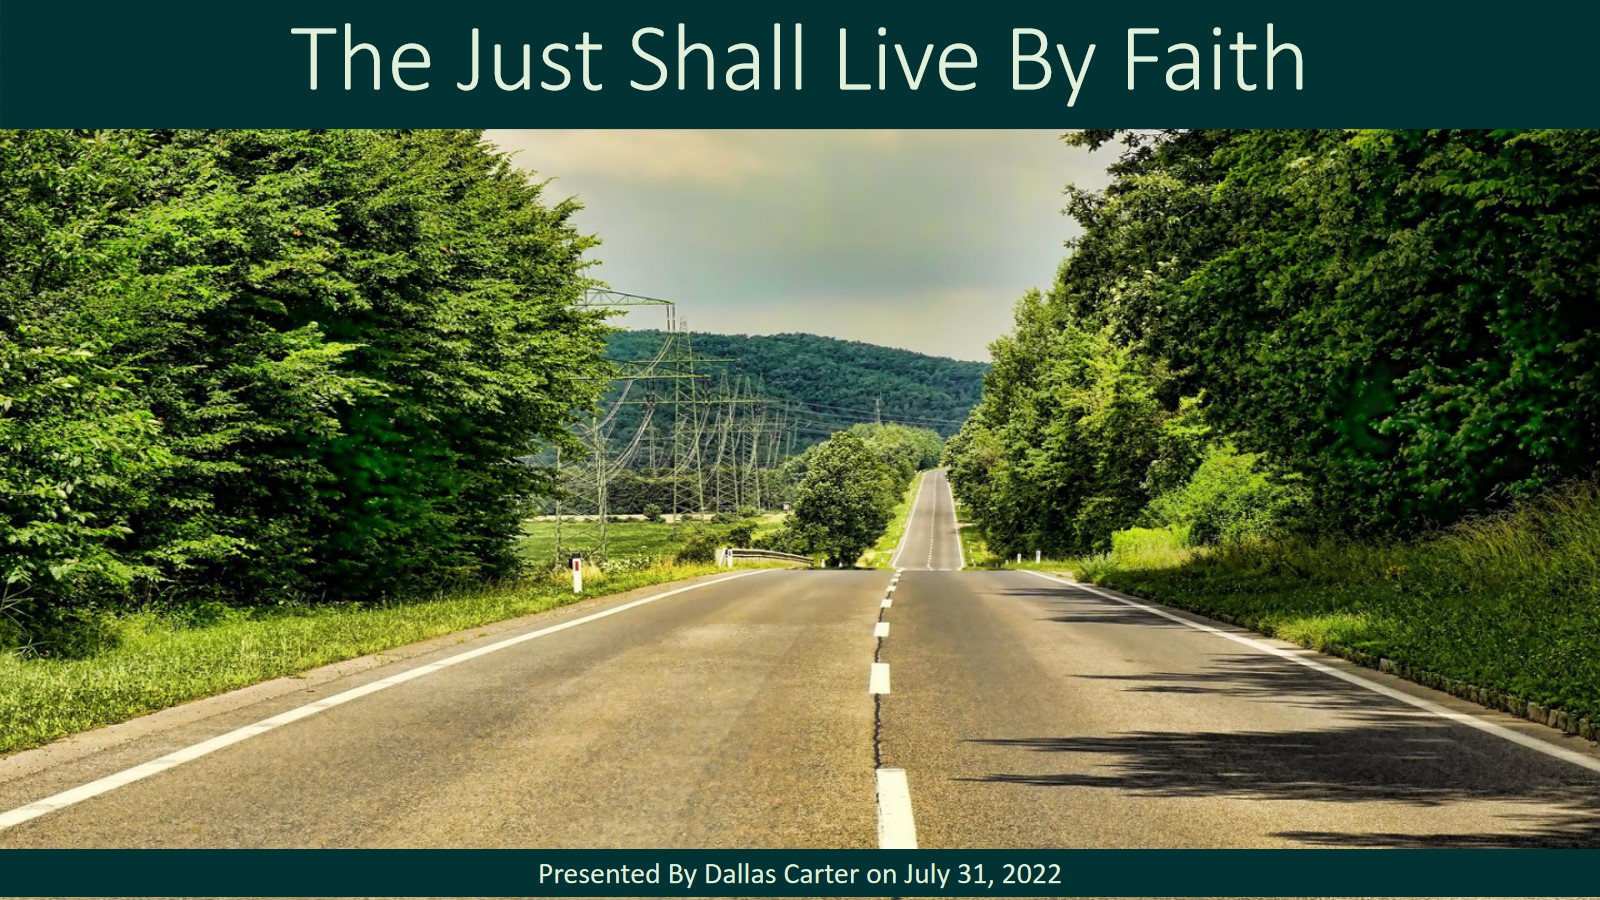 The Just shall live by faith